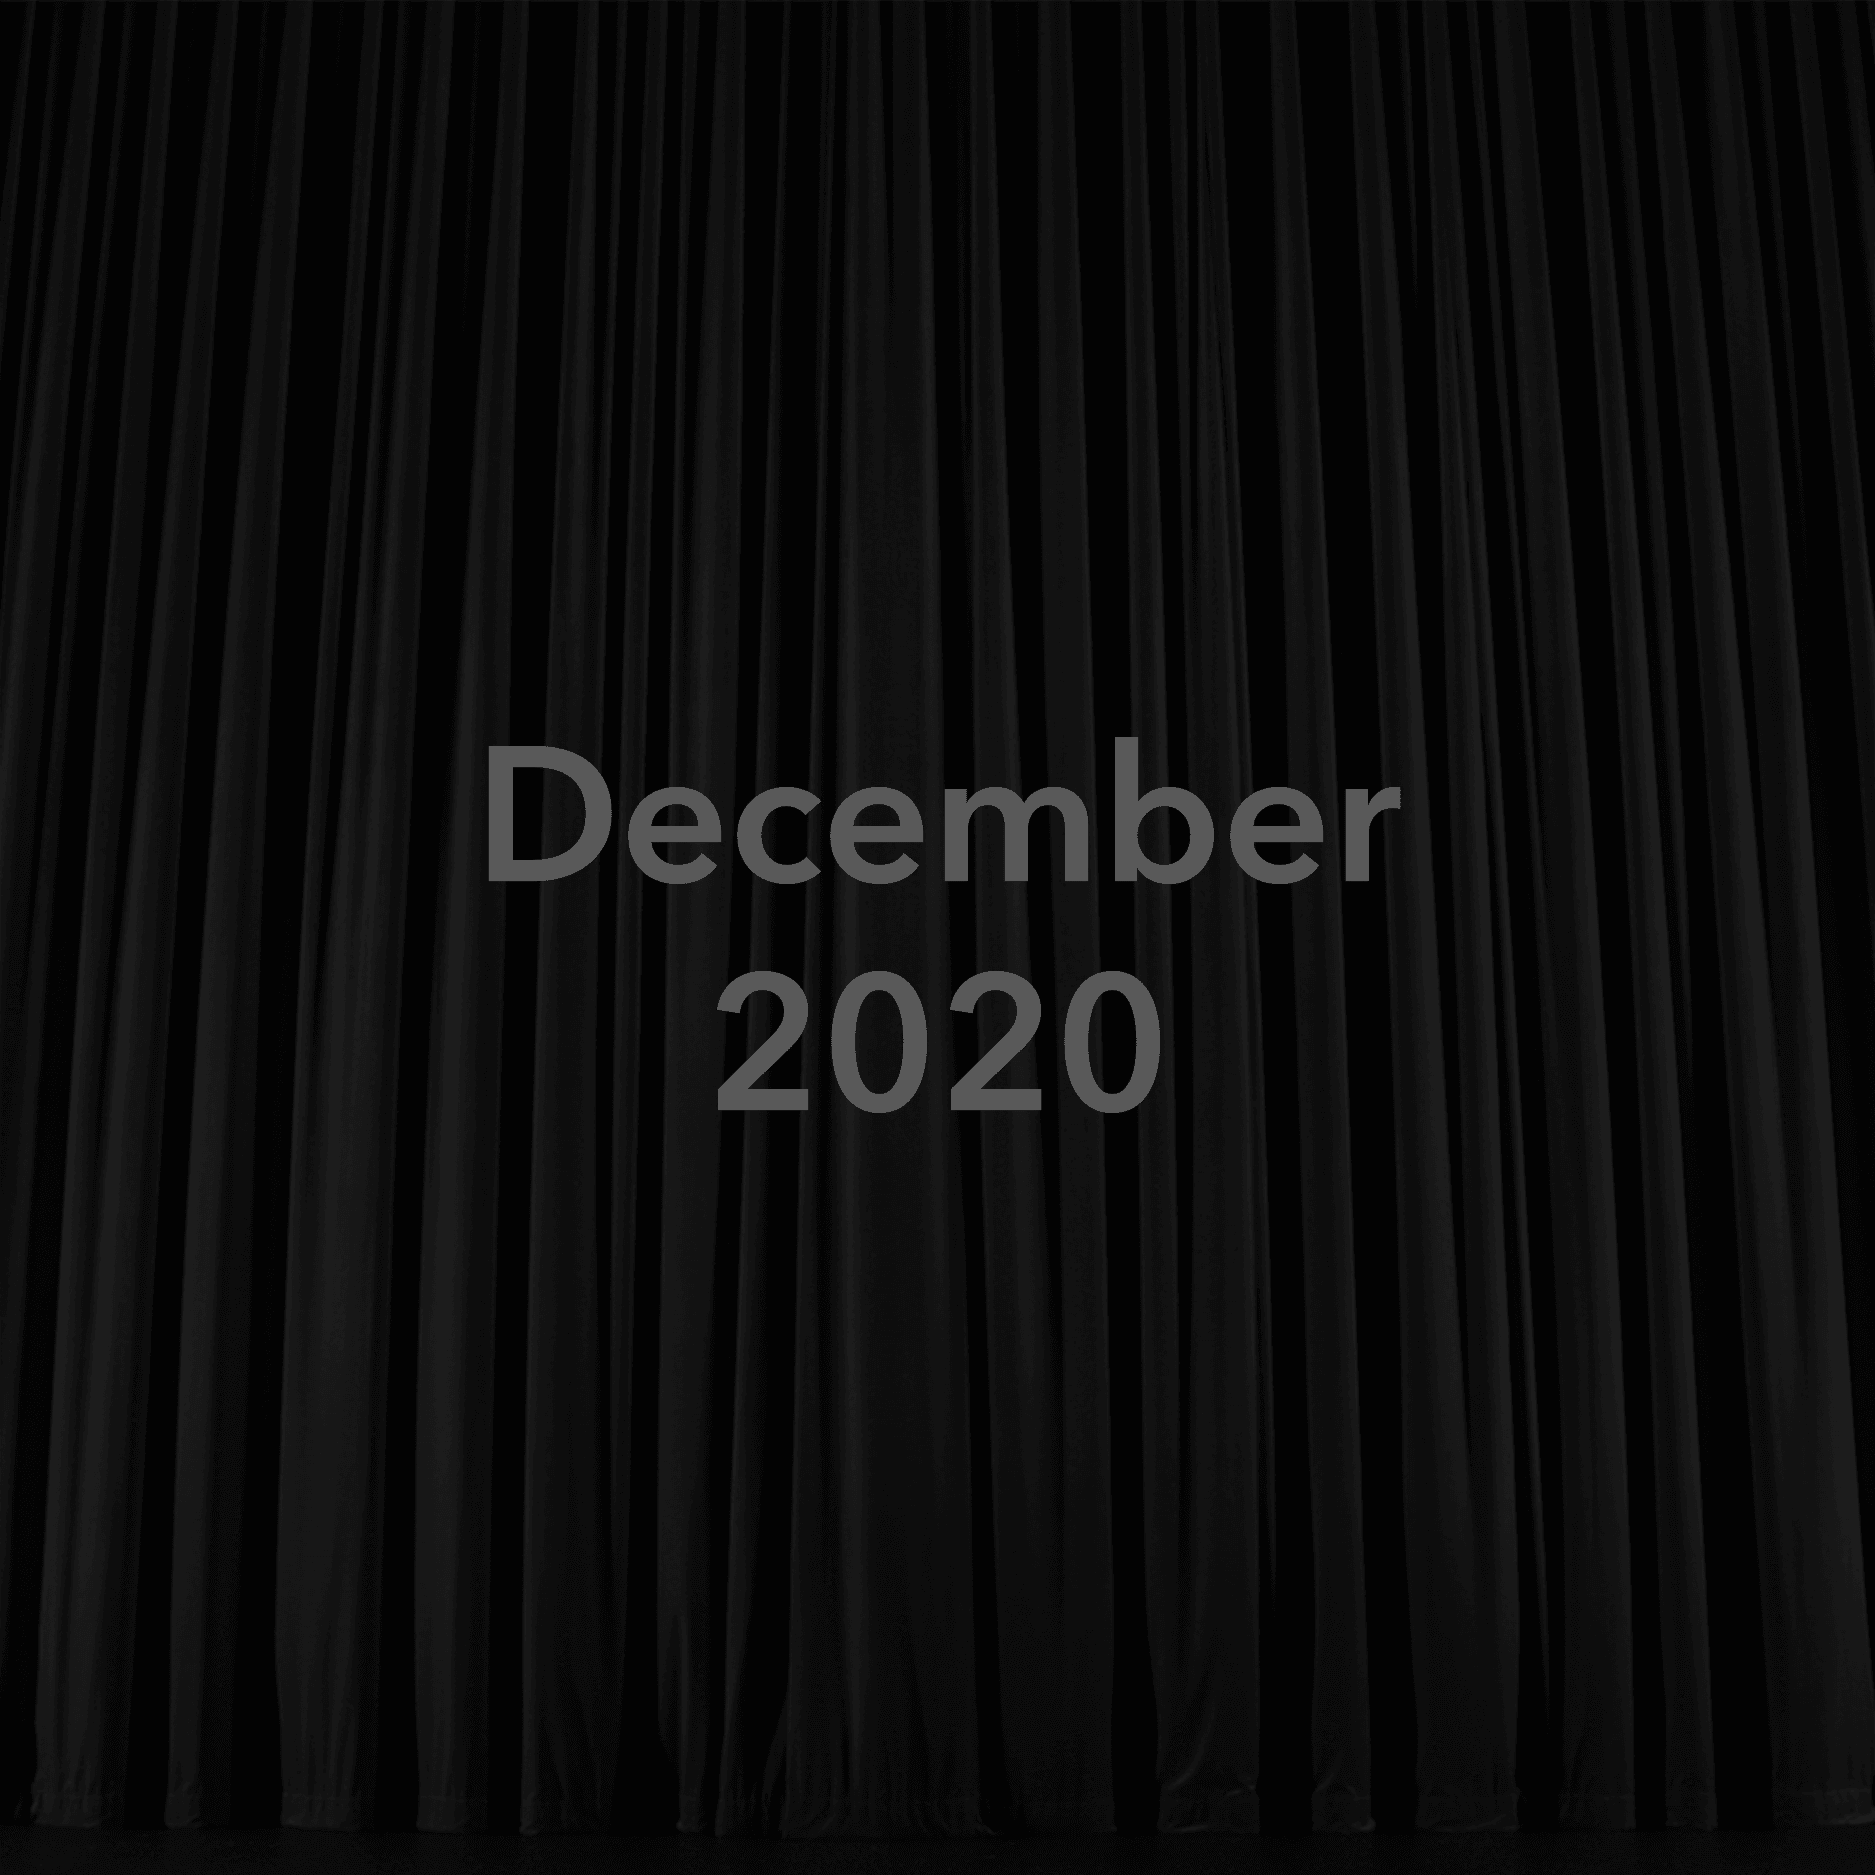 December 2020 Show Placeholder